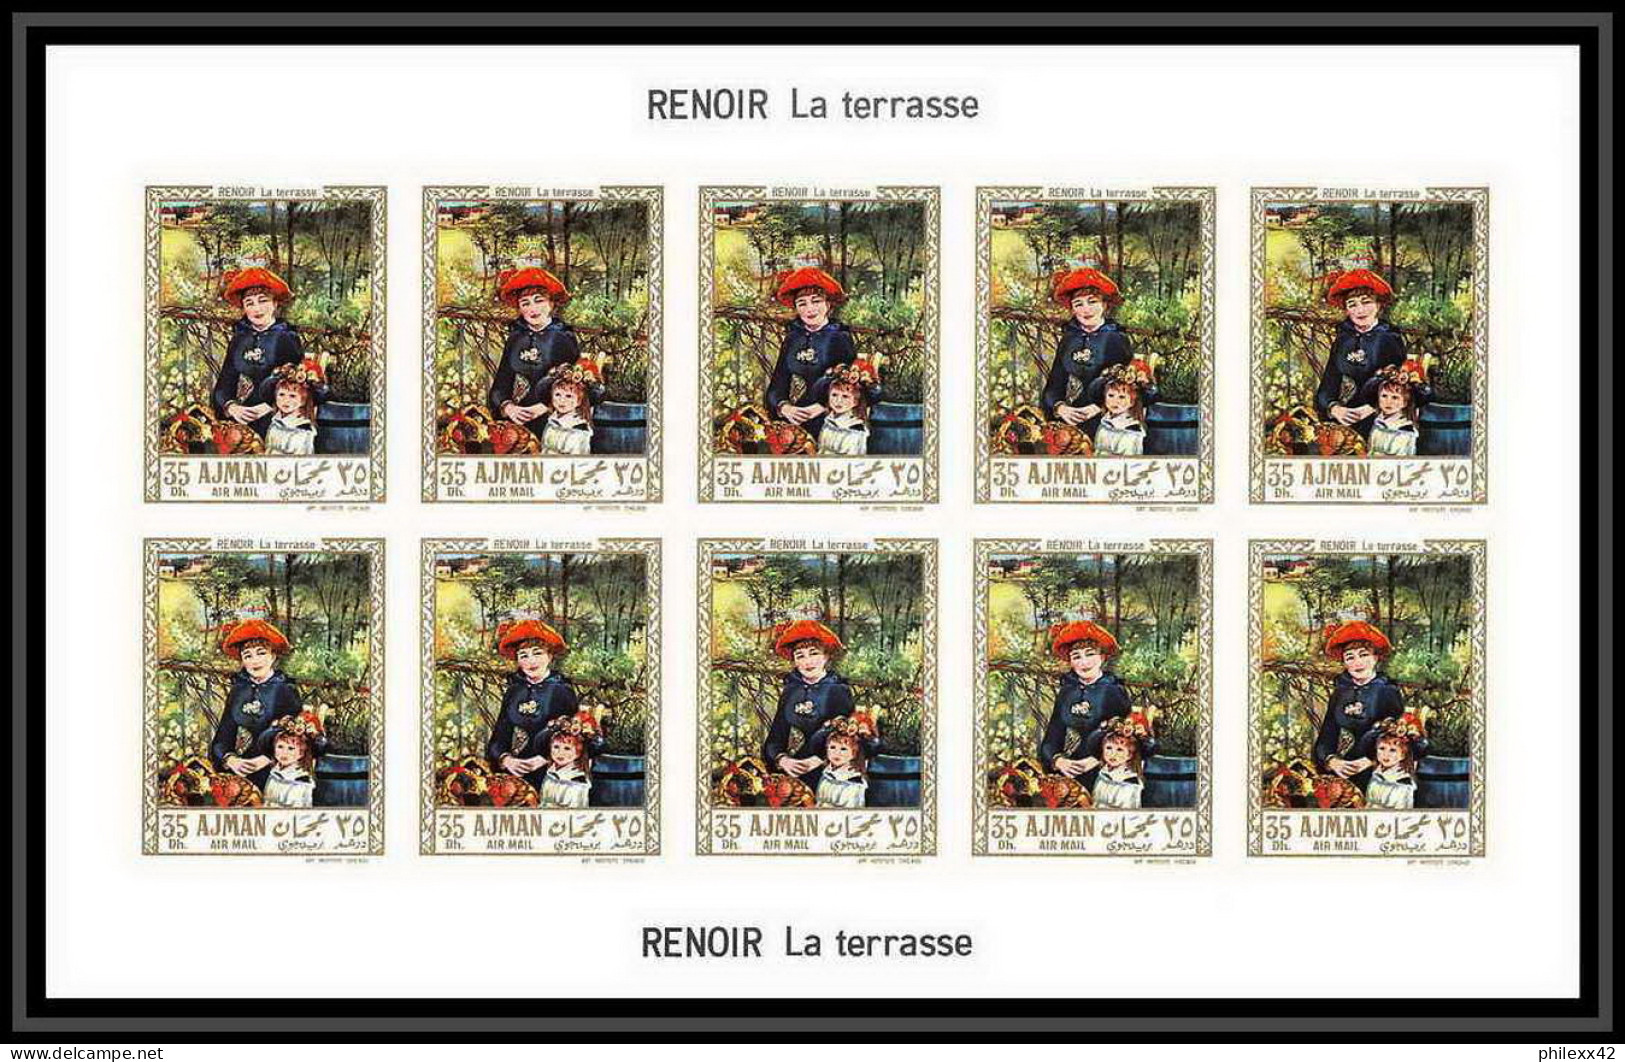 475 Ajman MNH ** N° 209 / 214 B Tableau (tableaux painting) Terbrugghen Renoir feuilles sheets Non dentelé imperf